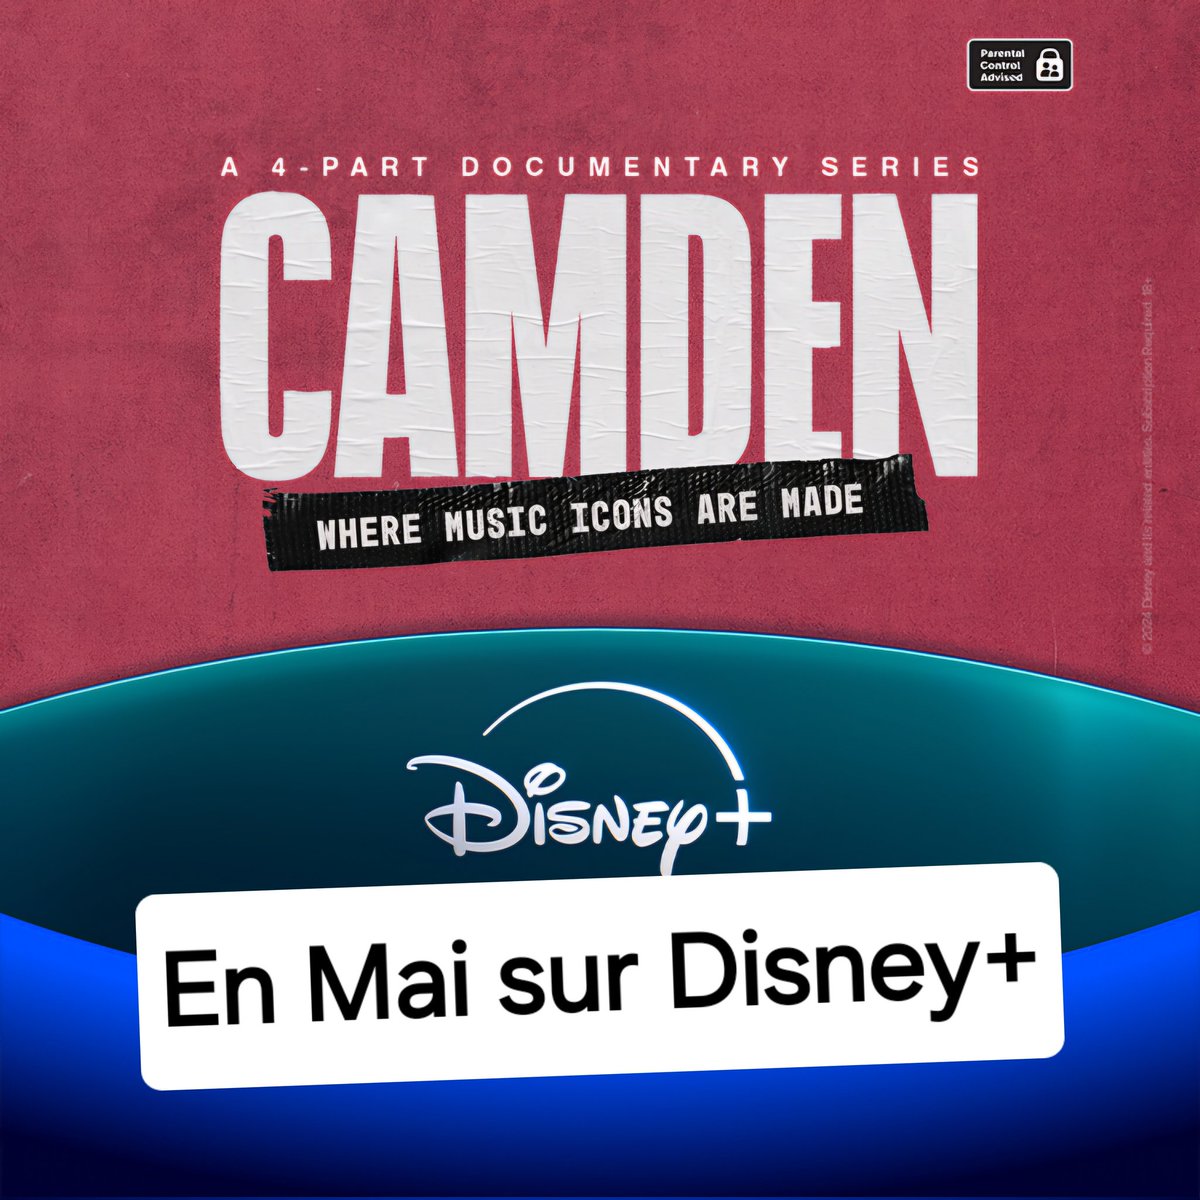 📢 La serie documentaire #Camden arrive ce Printemps sur #DisneyPlus !! Elle racontera les parcours des artistes natifs de Londres tels que #DuaLipa, Chris Martin le leader de #Coldplay, #BlackEyedPeas... .